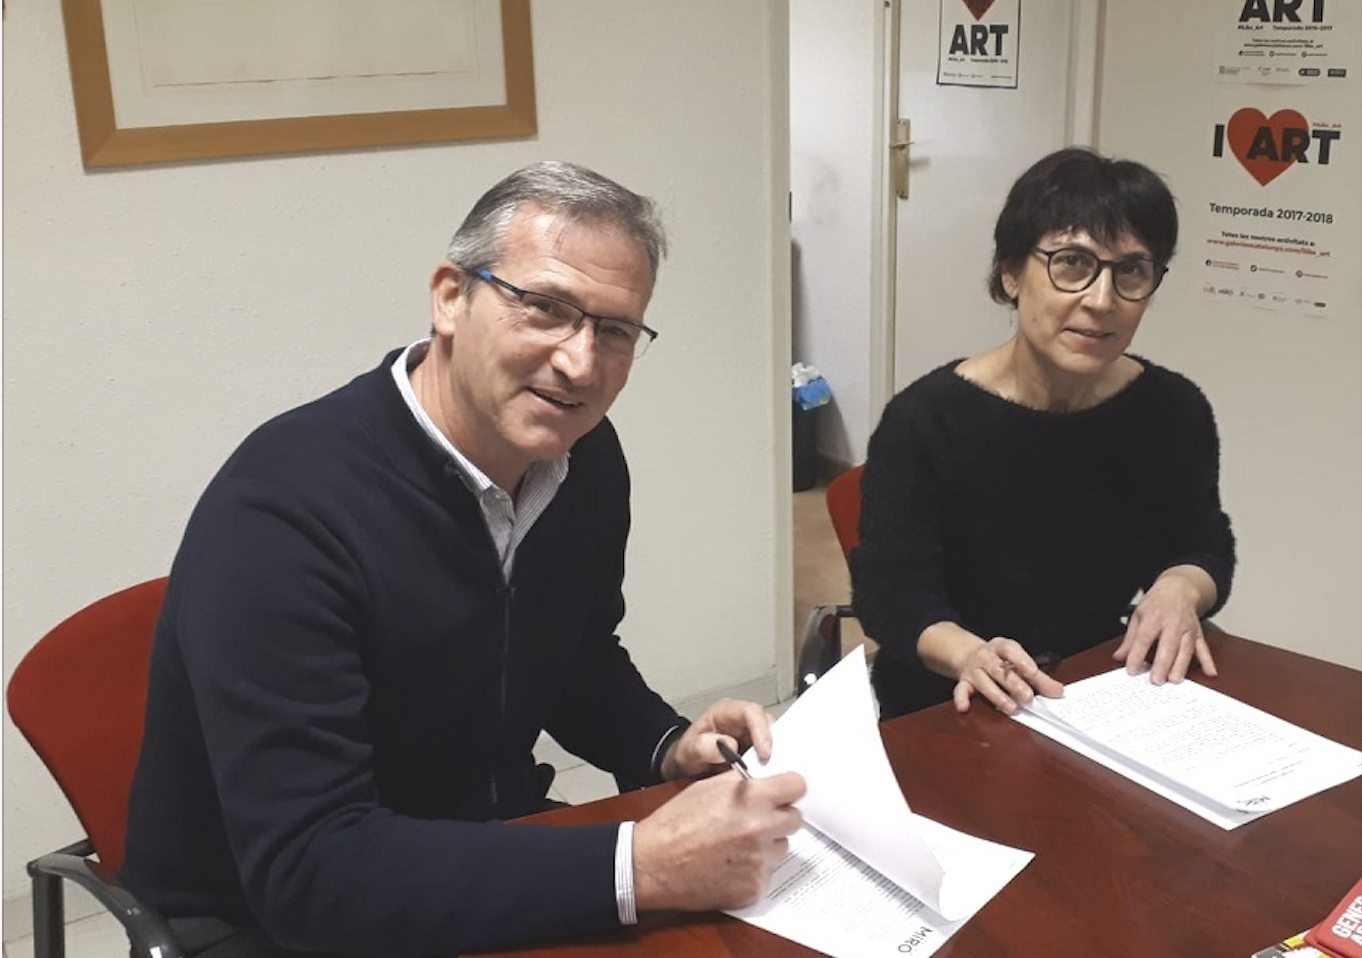 Vermuts Miró i Francesca Poza signen l\'acord del premi del IV Certamen Miró&Art